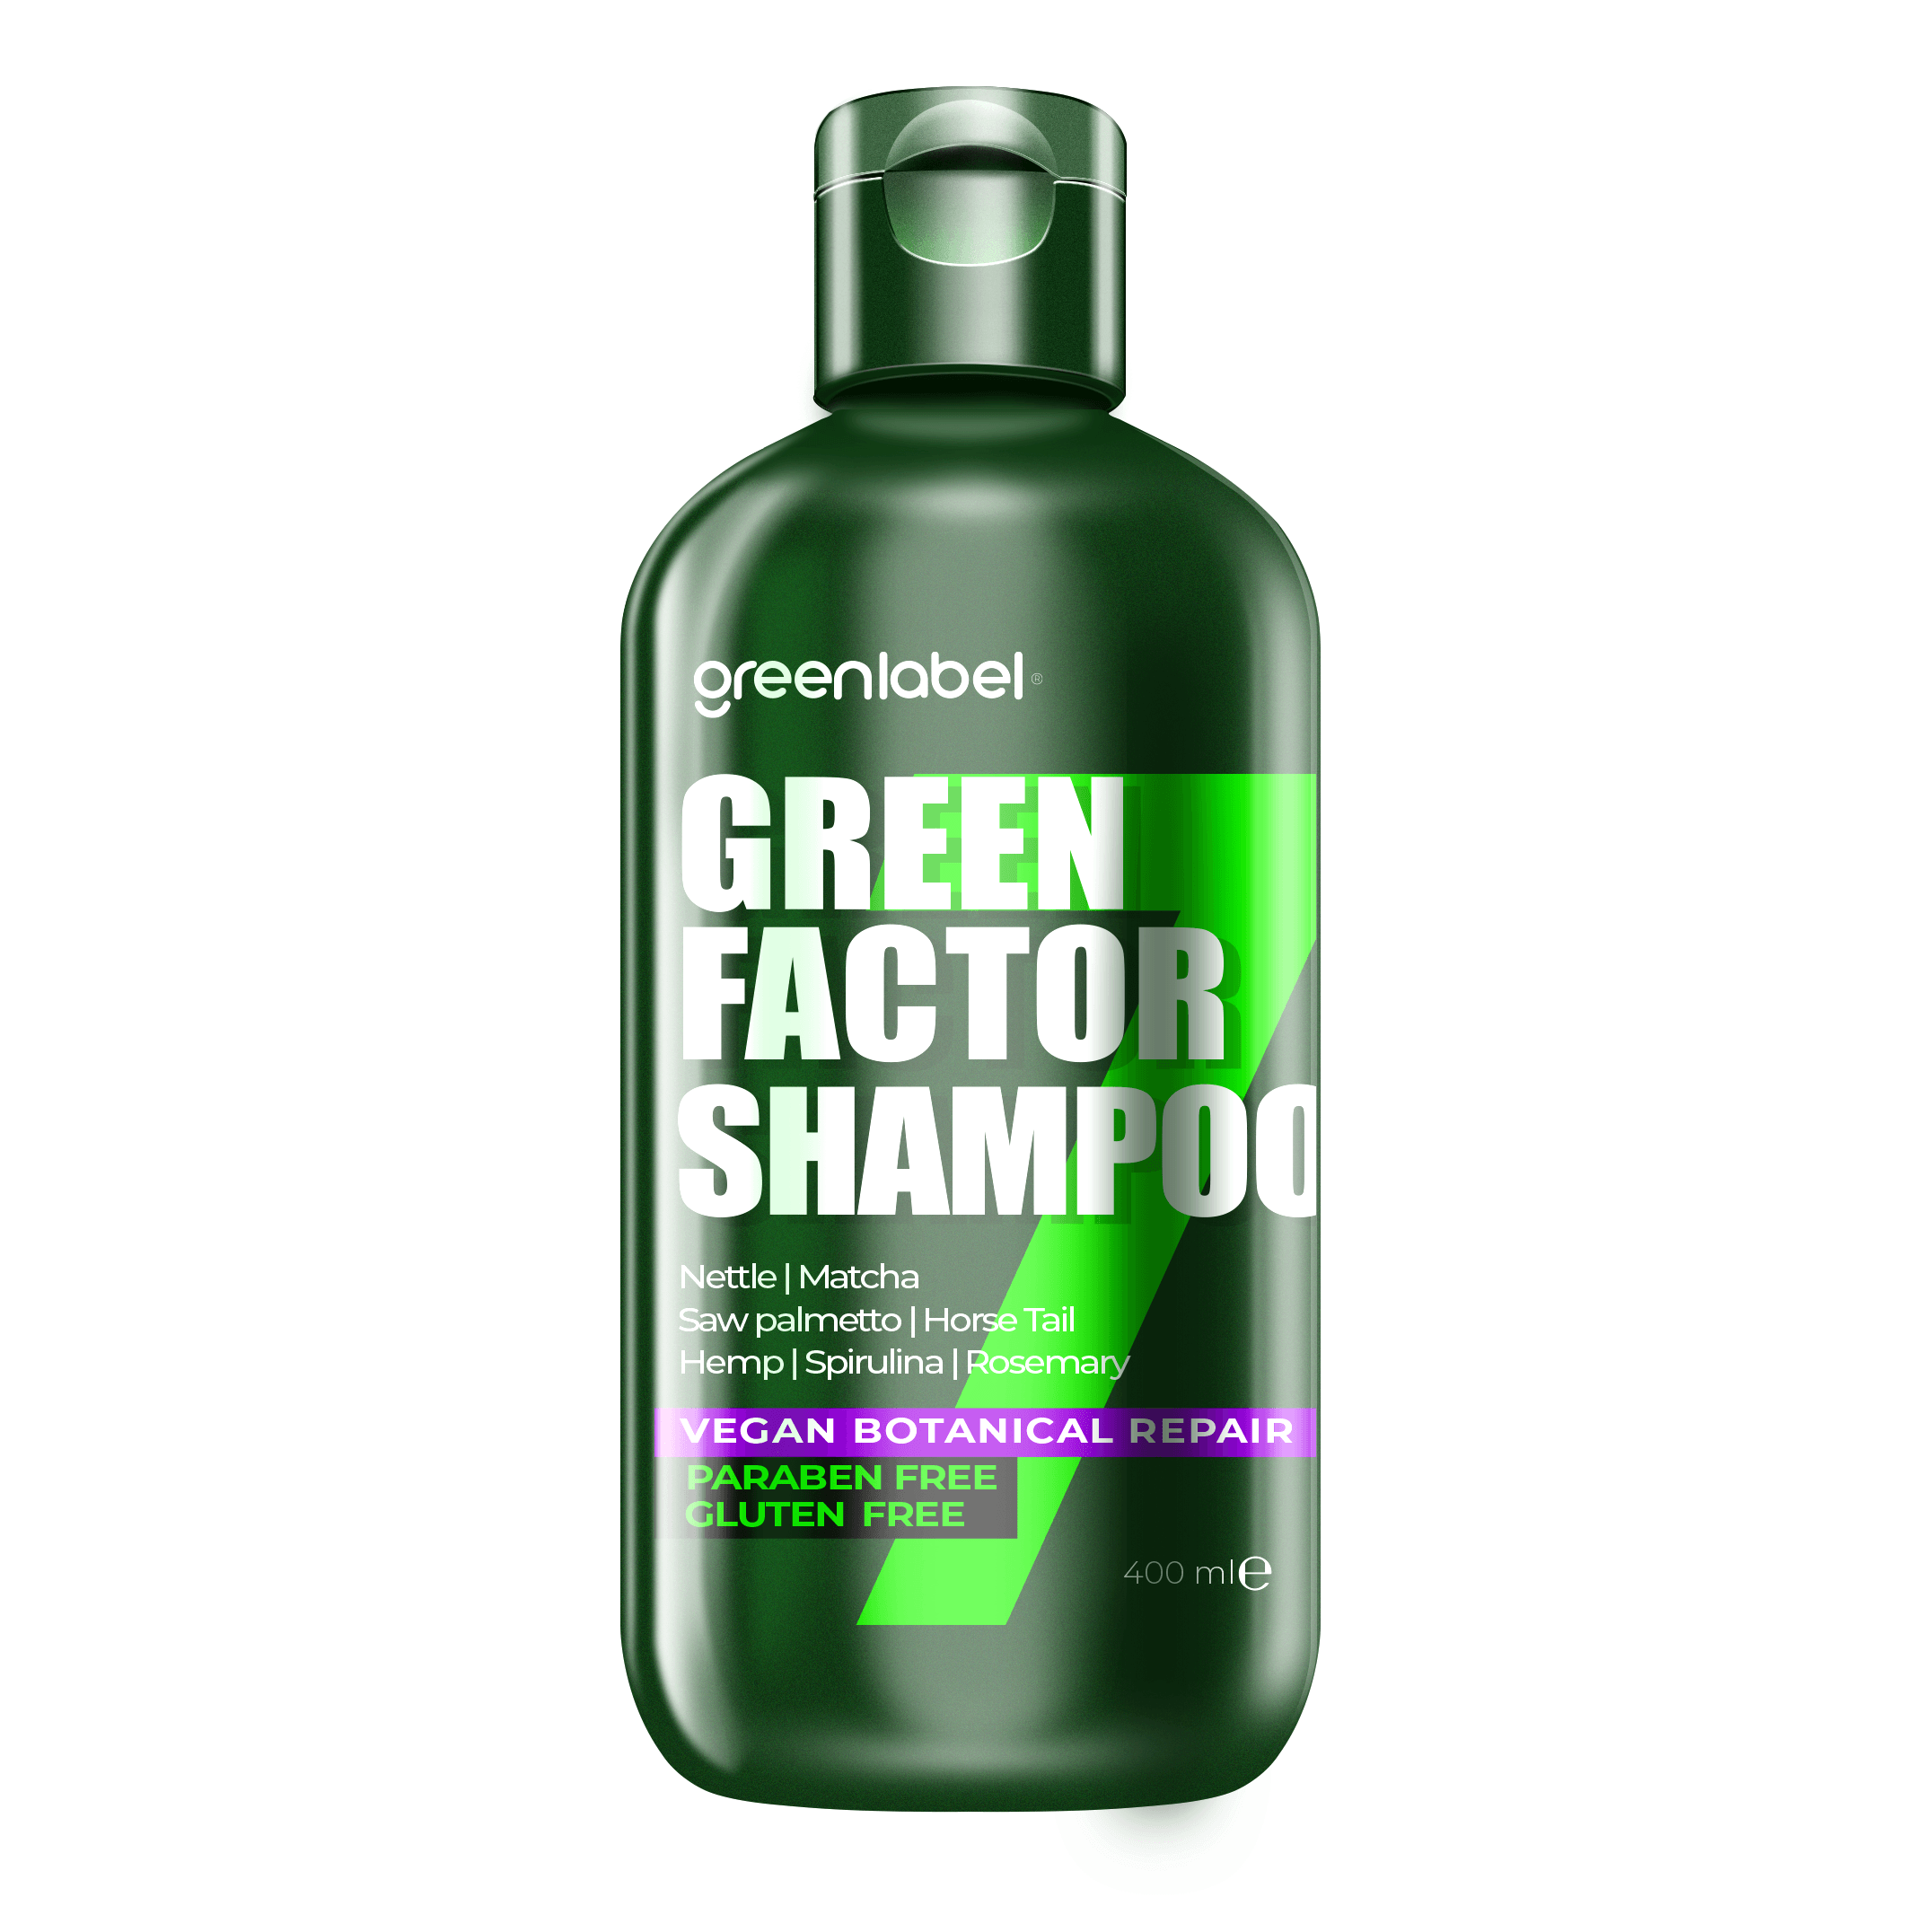 Green Factor 7 Bitkili Vegan Parabensiz Glutensiz Onarıcı ve Yoğun Bakım Şampuanı 400ml. main variant image